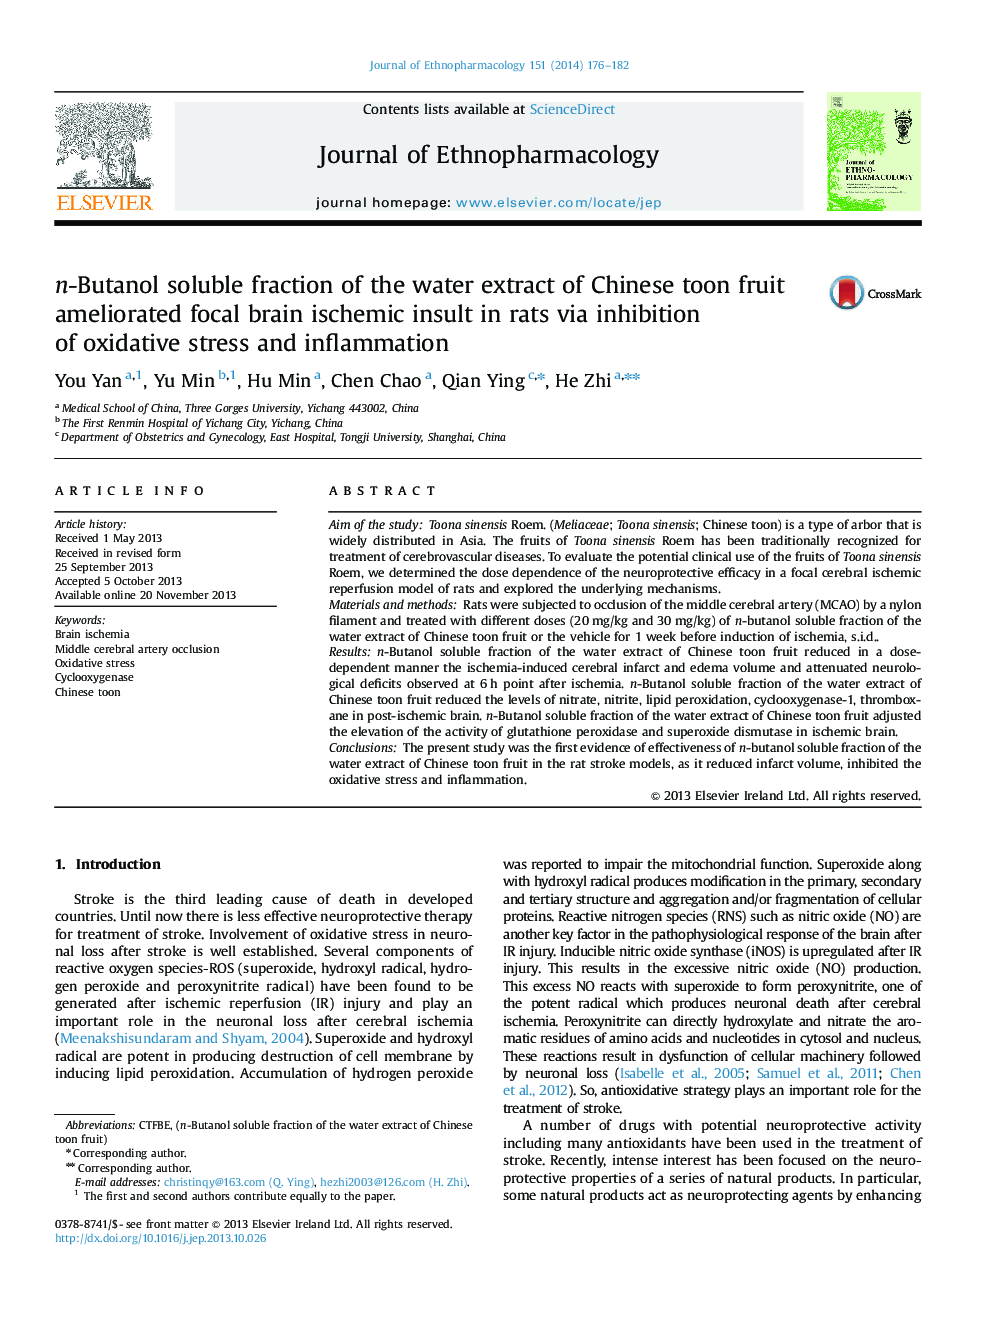 فسفر محلول نانوبانول عصاره آبی چای سبز چین سبب بهبودی تومورهای ایسکمیک مغزی کانونی در موش صحرایی شده از طریق مهار استرس اکسیداتیو و التهاب 